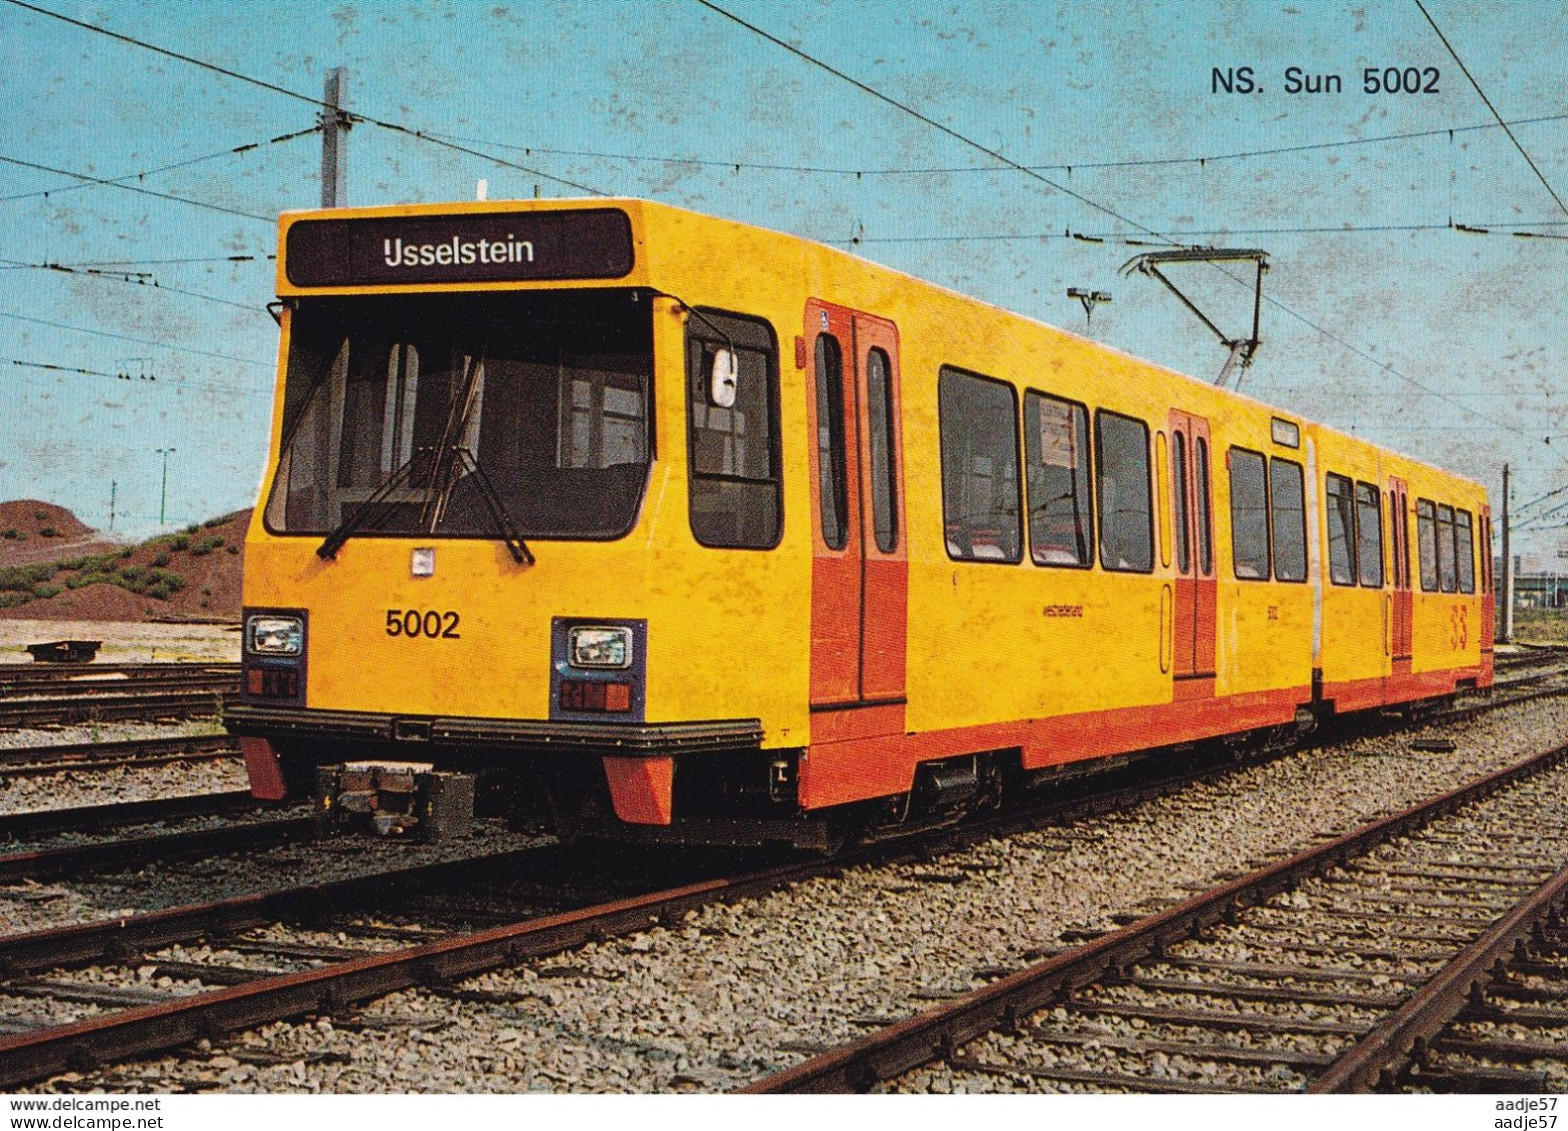 NS Sun 5002 - Tram